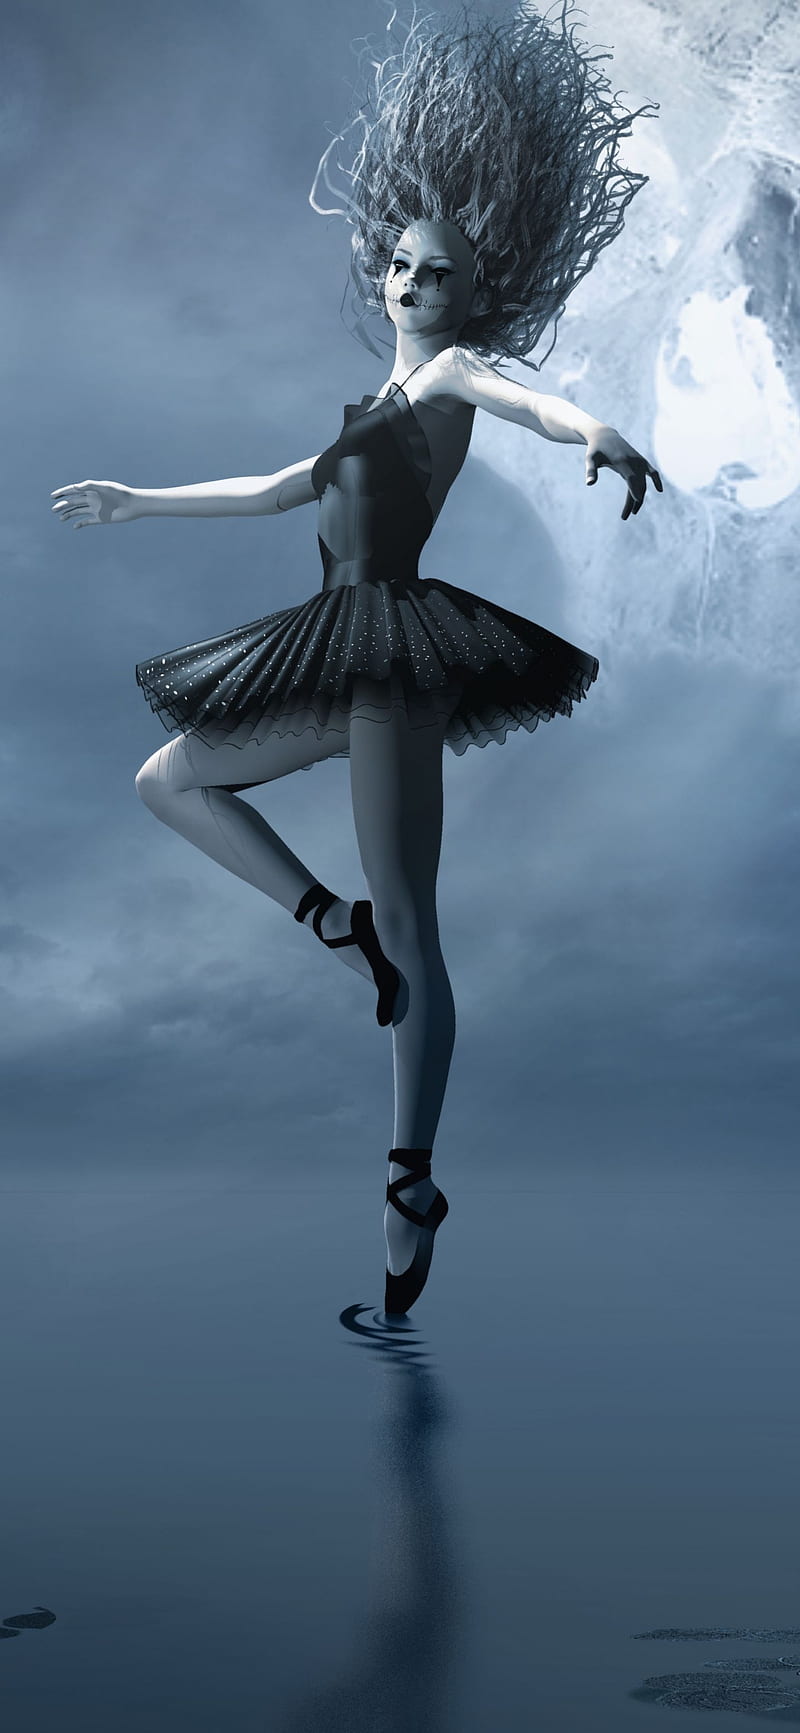 ballet backgrounds for desktop